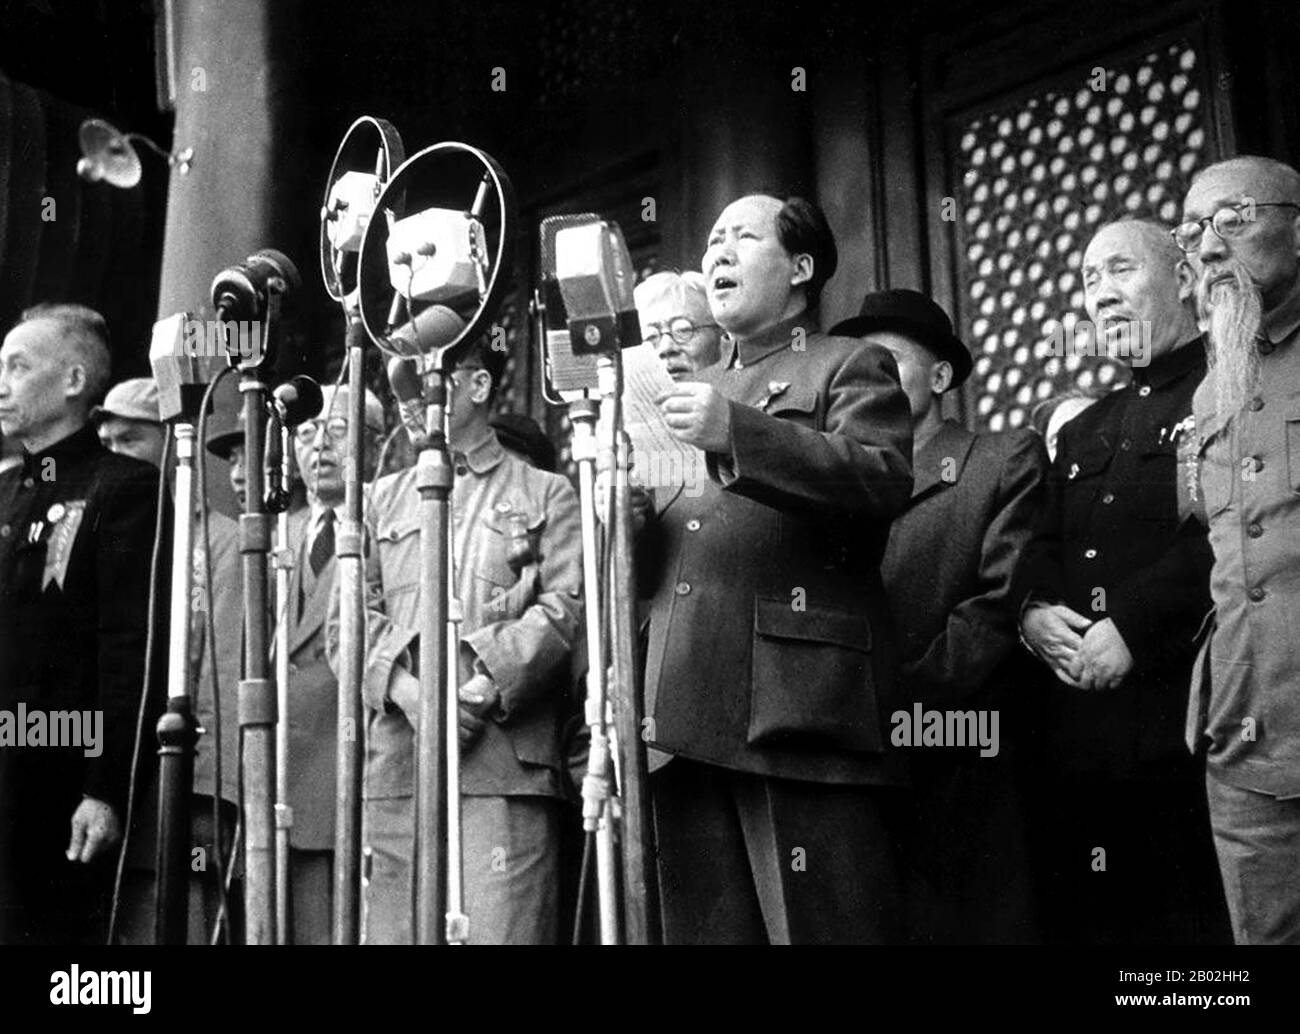 Mao Zedong, également translittéré comme Mao Tse-tung (26 décembre 1893 – 9 septembre 1976), était un révolutionnaire communiste chinois, un stratège de guérilla, un auteur, un théoricien politique et un chef de la Révolution chinoise. Communément appelé Président Mao, il était l'architecte de la République Populaire de Chine (RPC) depuis sa création en 1949 et il a exercé un contrôle autoritaire sur la nation jusqu'à sa mort en 1976. La contribution théorique de MAO au marxisme-léninisme, ainsi que ses stratégies militaires et sa marque de politiques politiques, sont maintenant collectivement connues sous le nom de Maoïsme. Banque D'Images